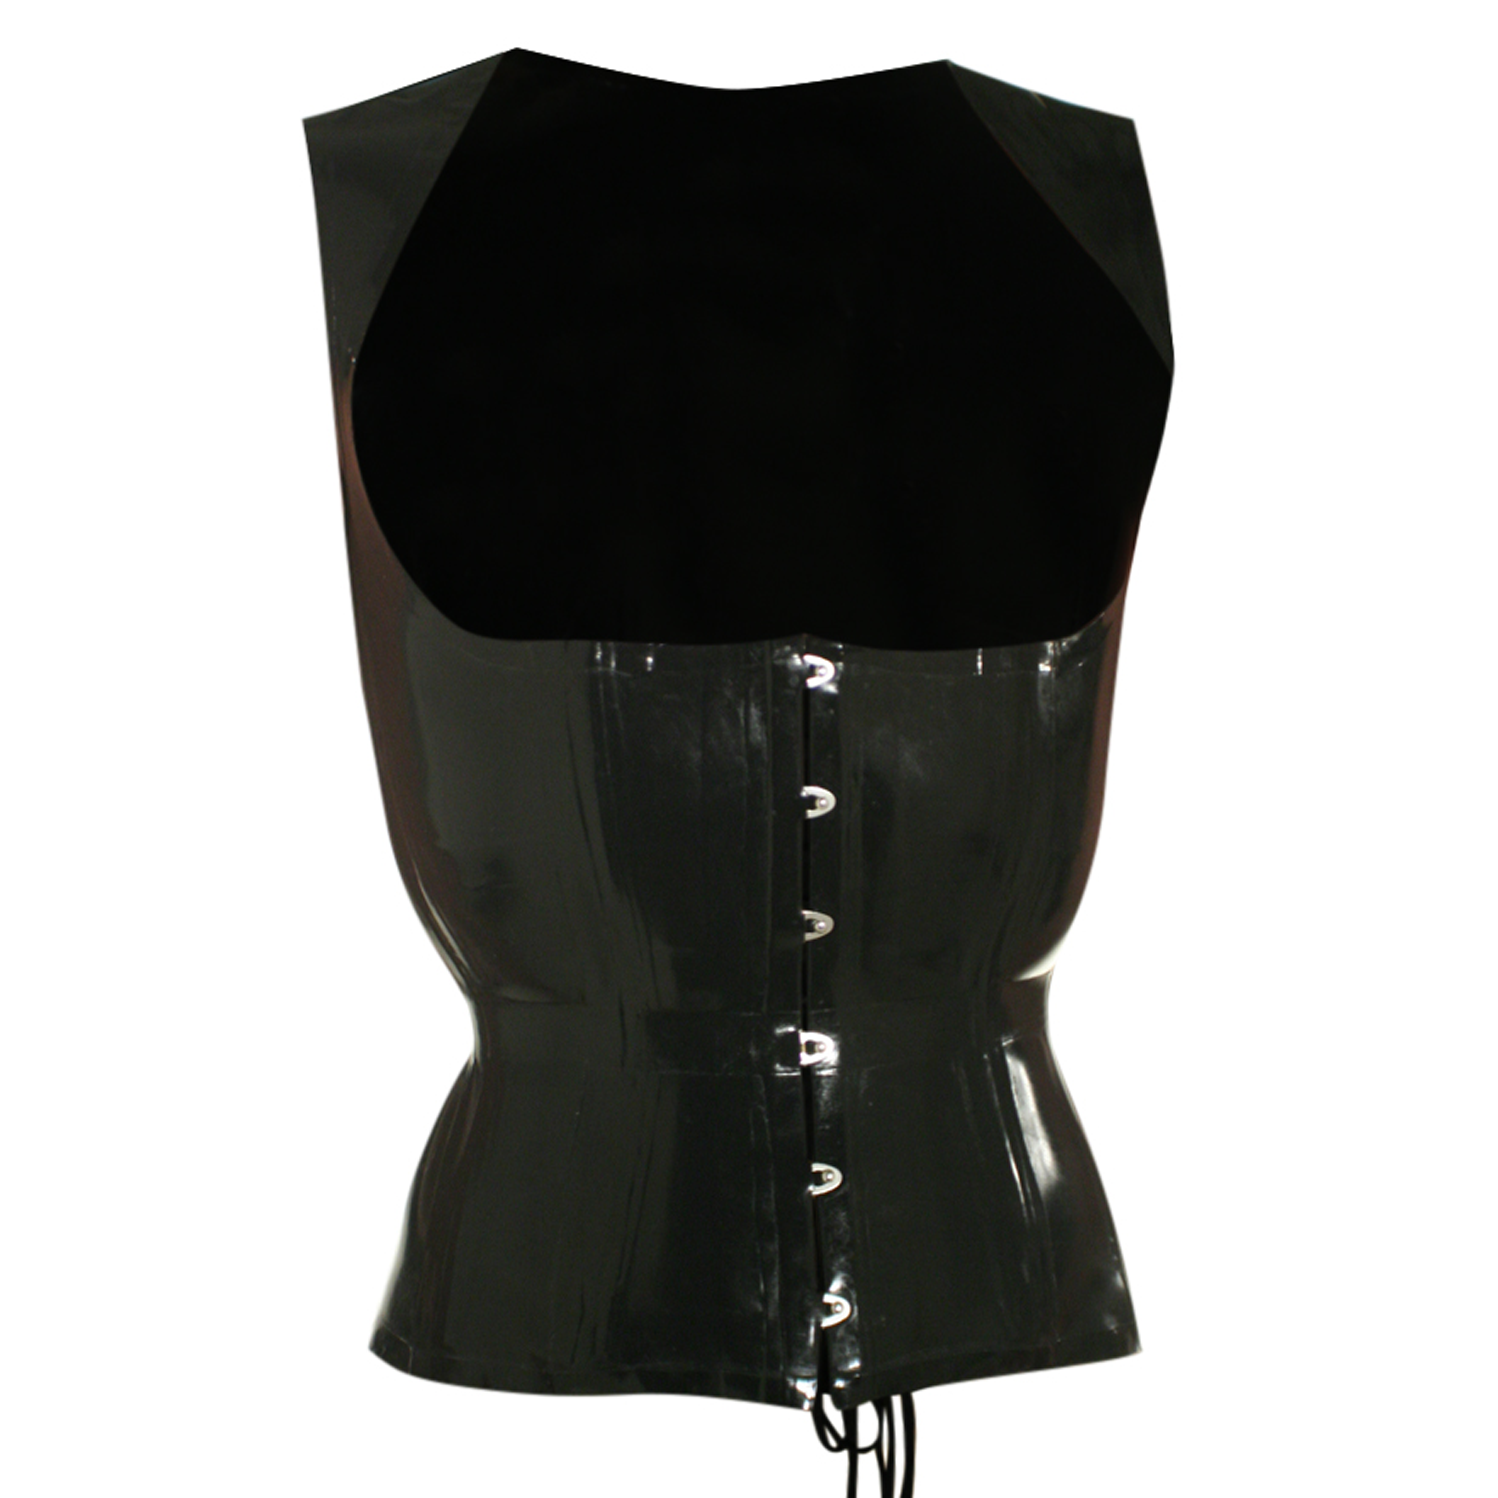 LE 1778 PVC Corset for Men - Men's corsets 